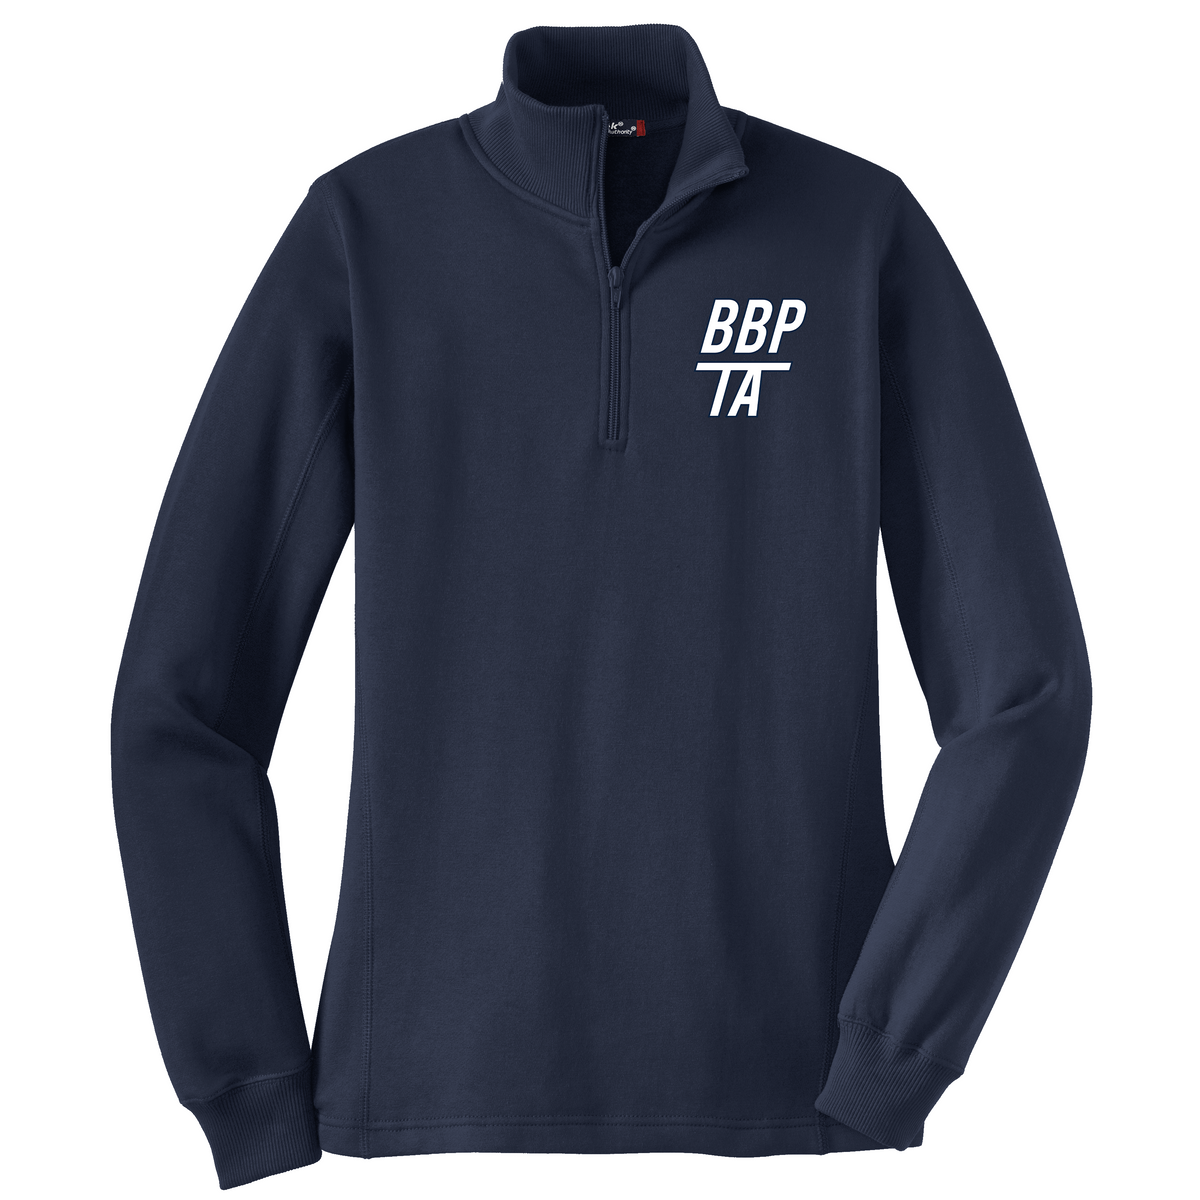 BBP TA Women's 1/4 Zip Fleece